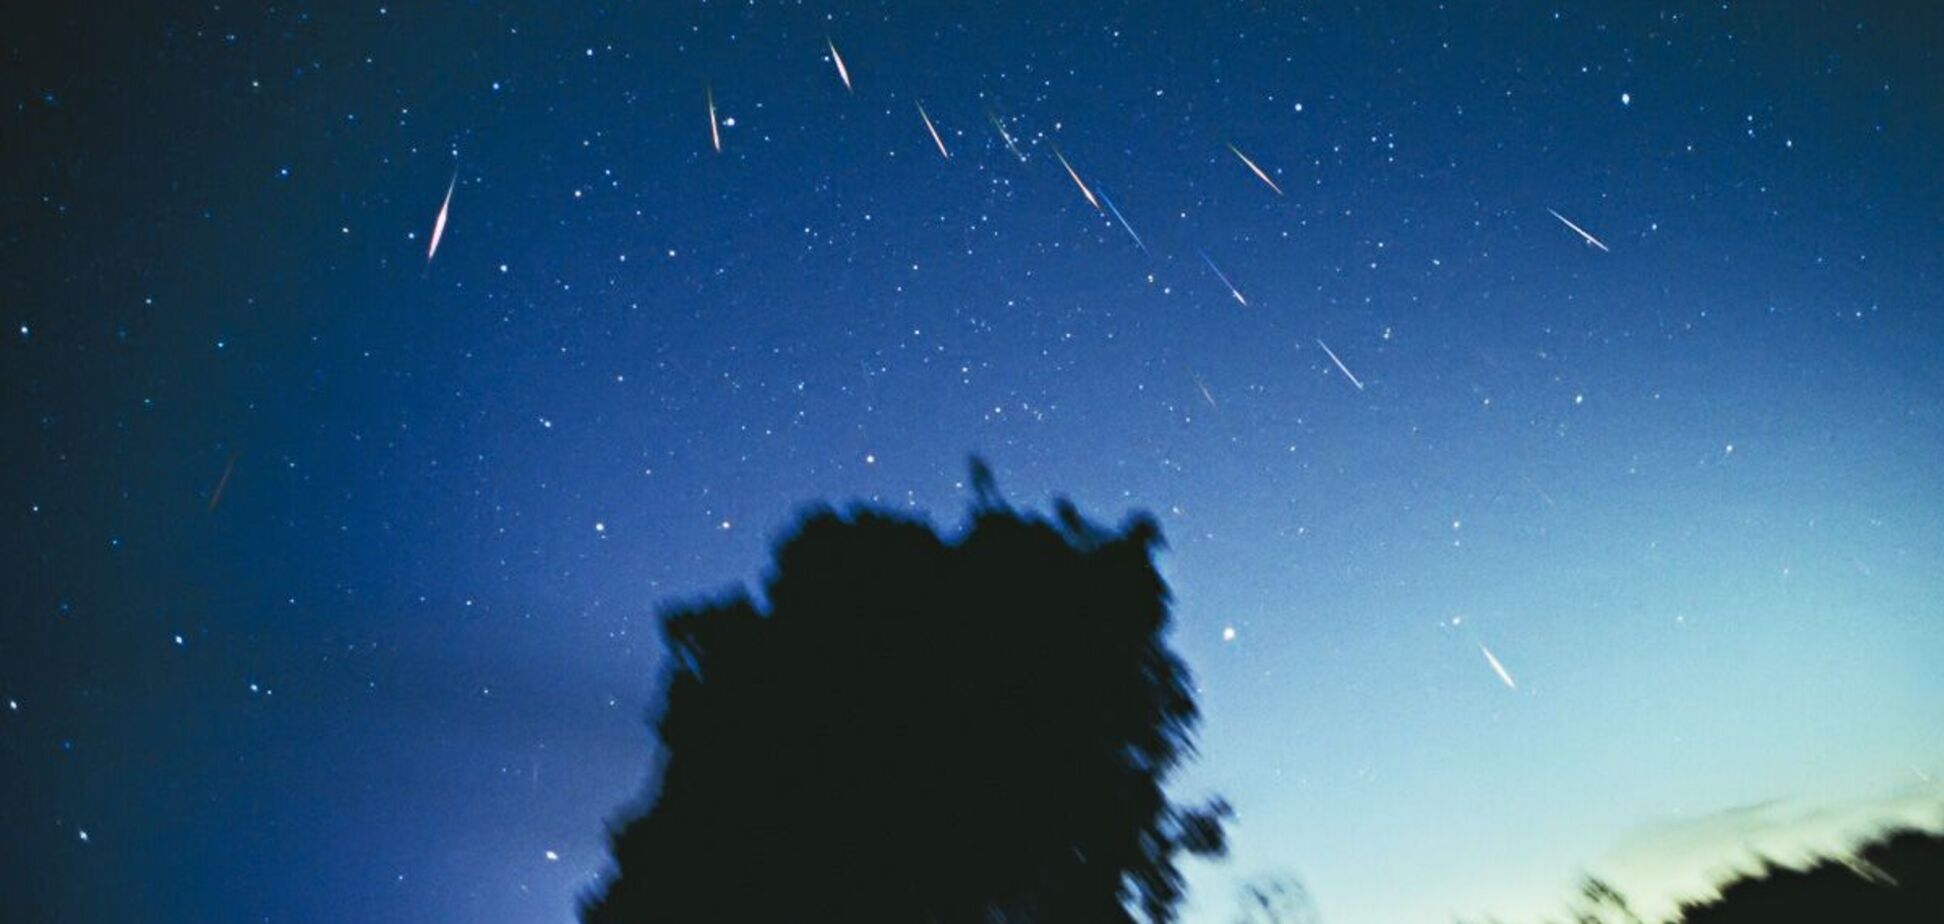 Леоніди – найшвидший з відомих метеорних потоків